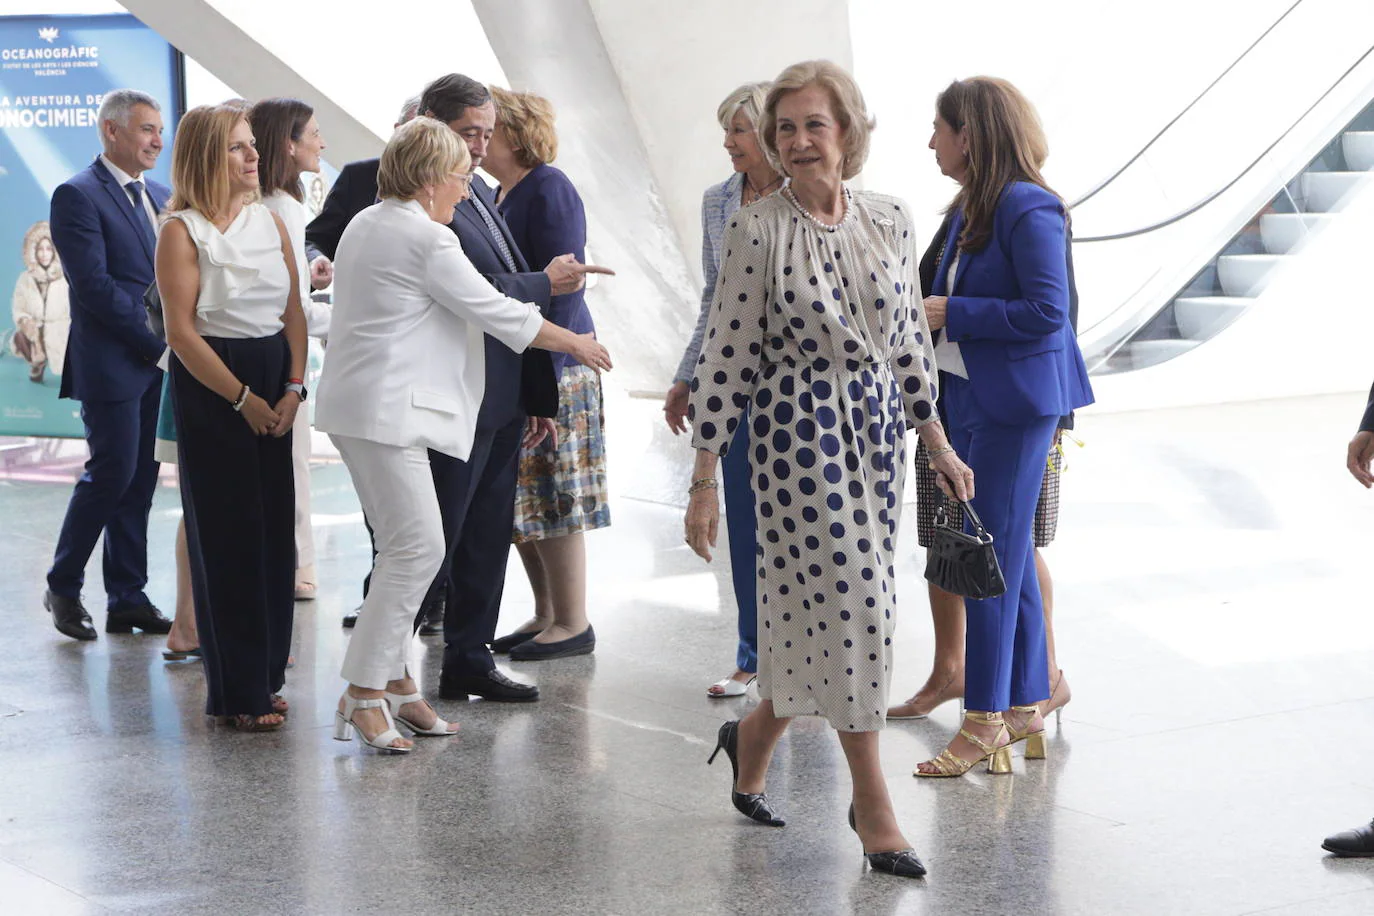 La Reina Sofía inaugura en Valencia el VII Congreso Internacional de Investigación e Innovación en Enfermedades Neurodegenerativas 